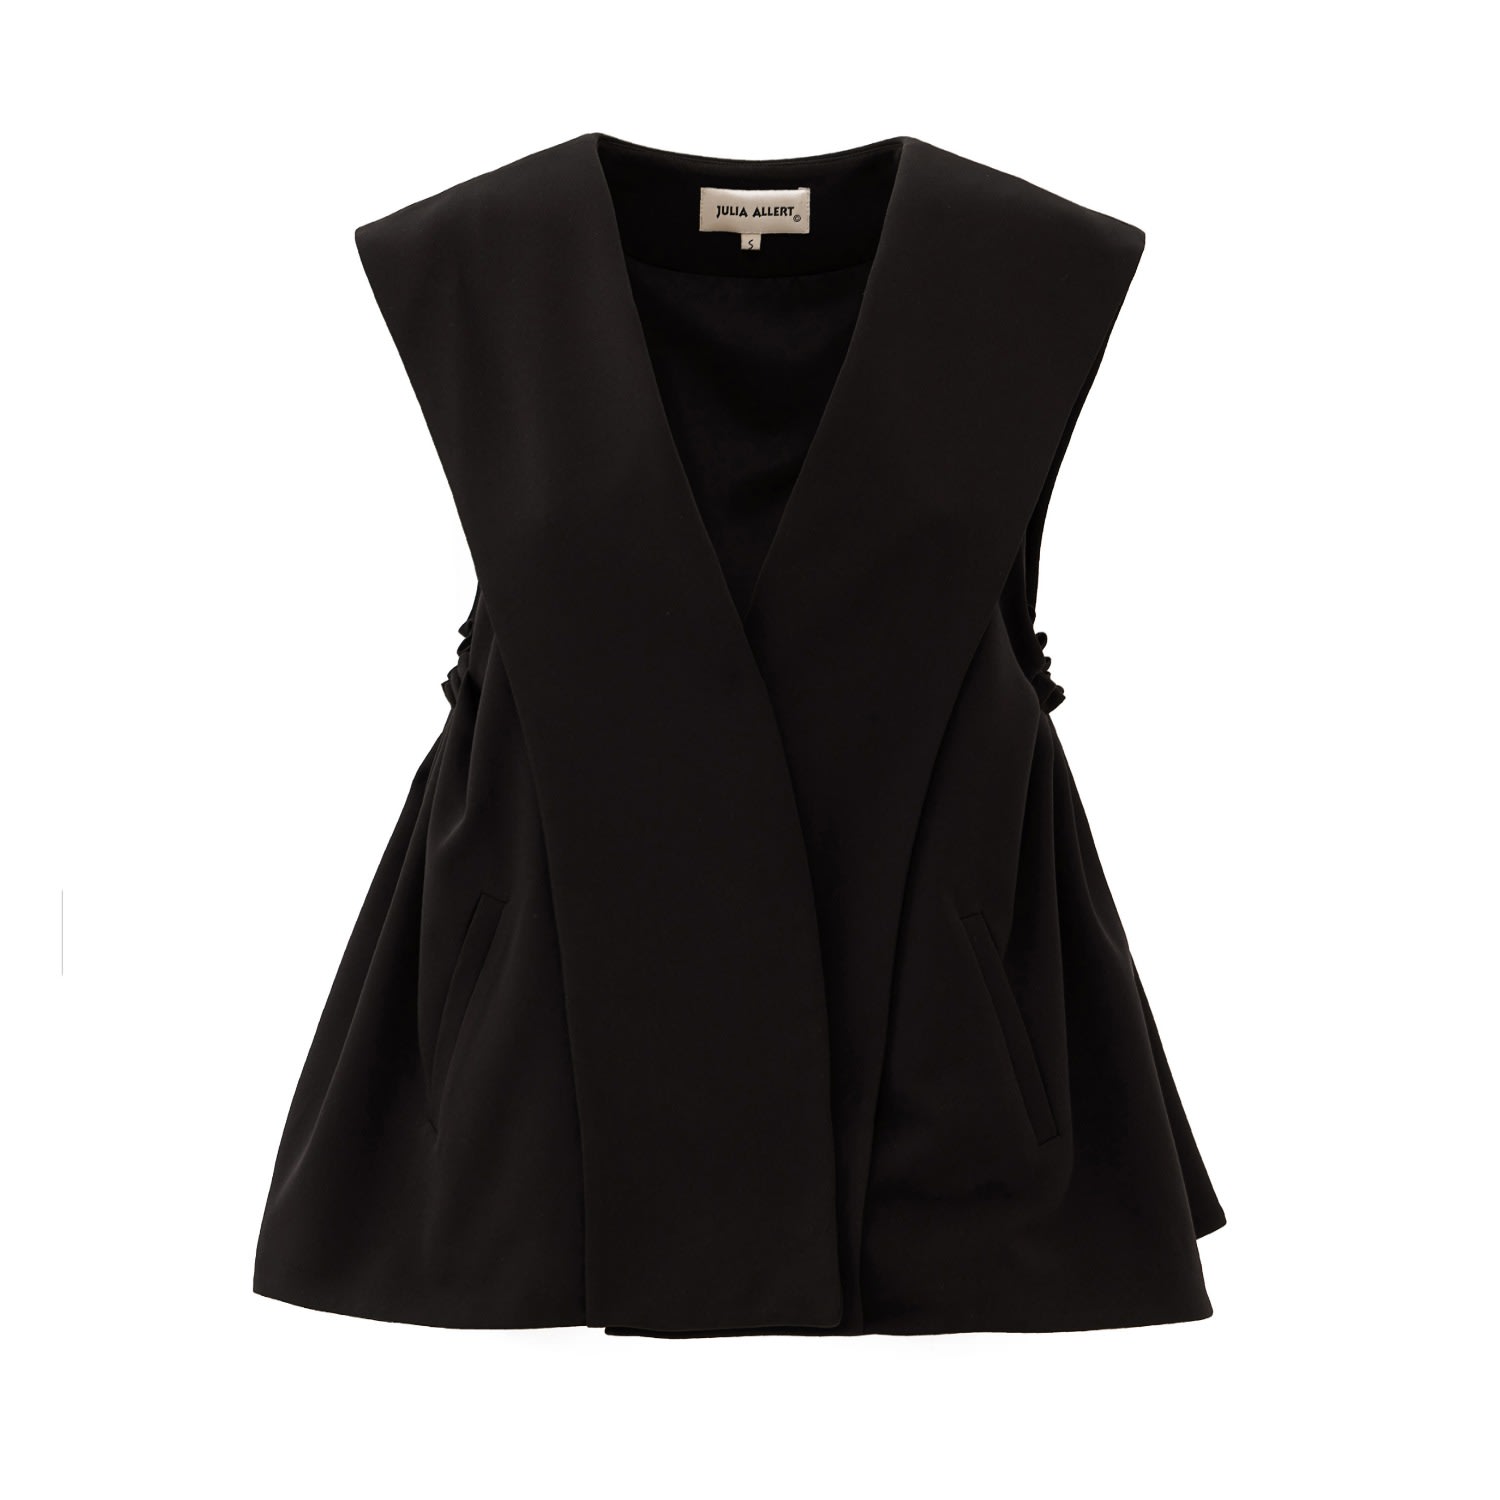 Women’s Designer Blazer Vest Black Medium Julia Allert